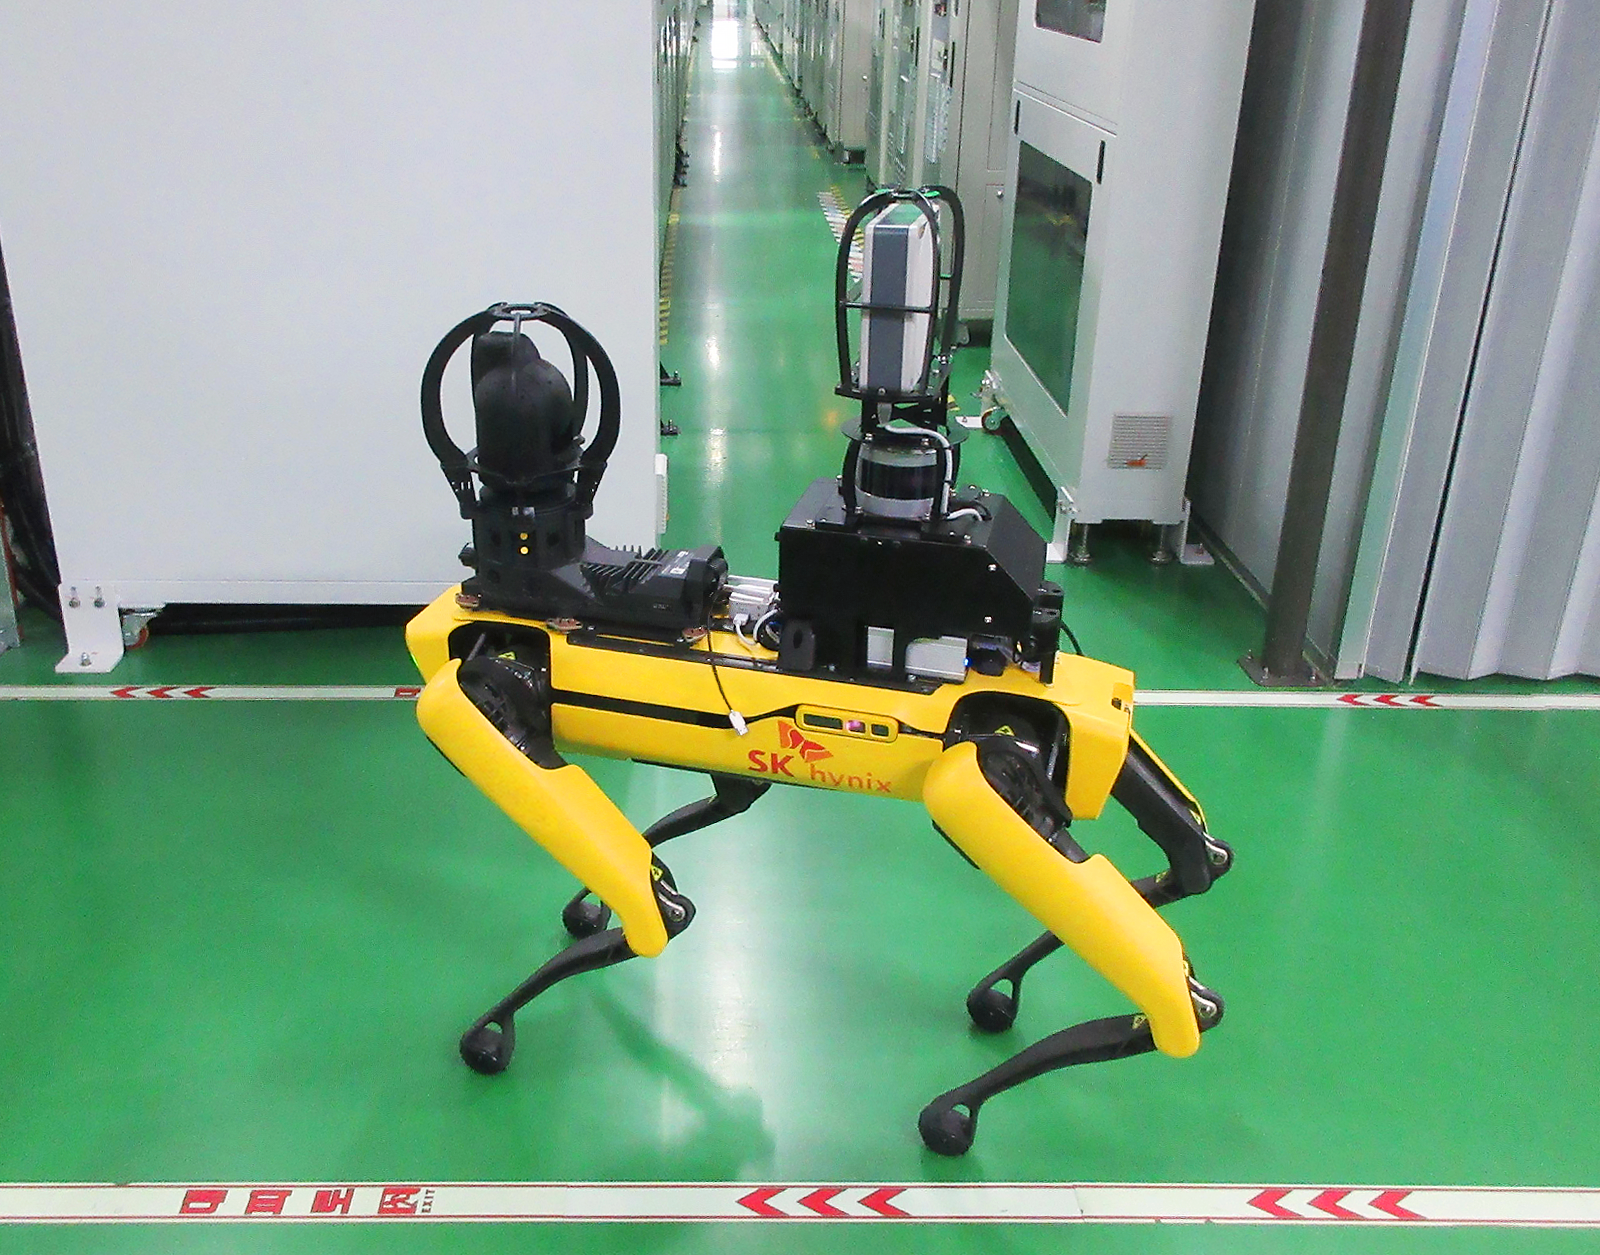 SK하이닉스의 4족 보행 로봇이 사업장 내 안전 검증을 위해 순찰하는 모습